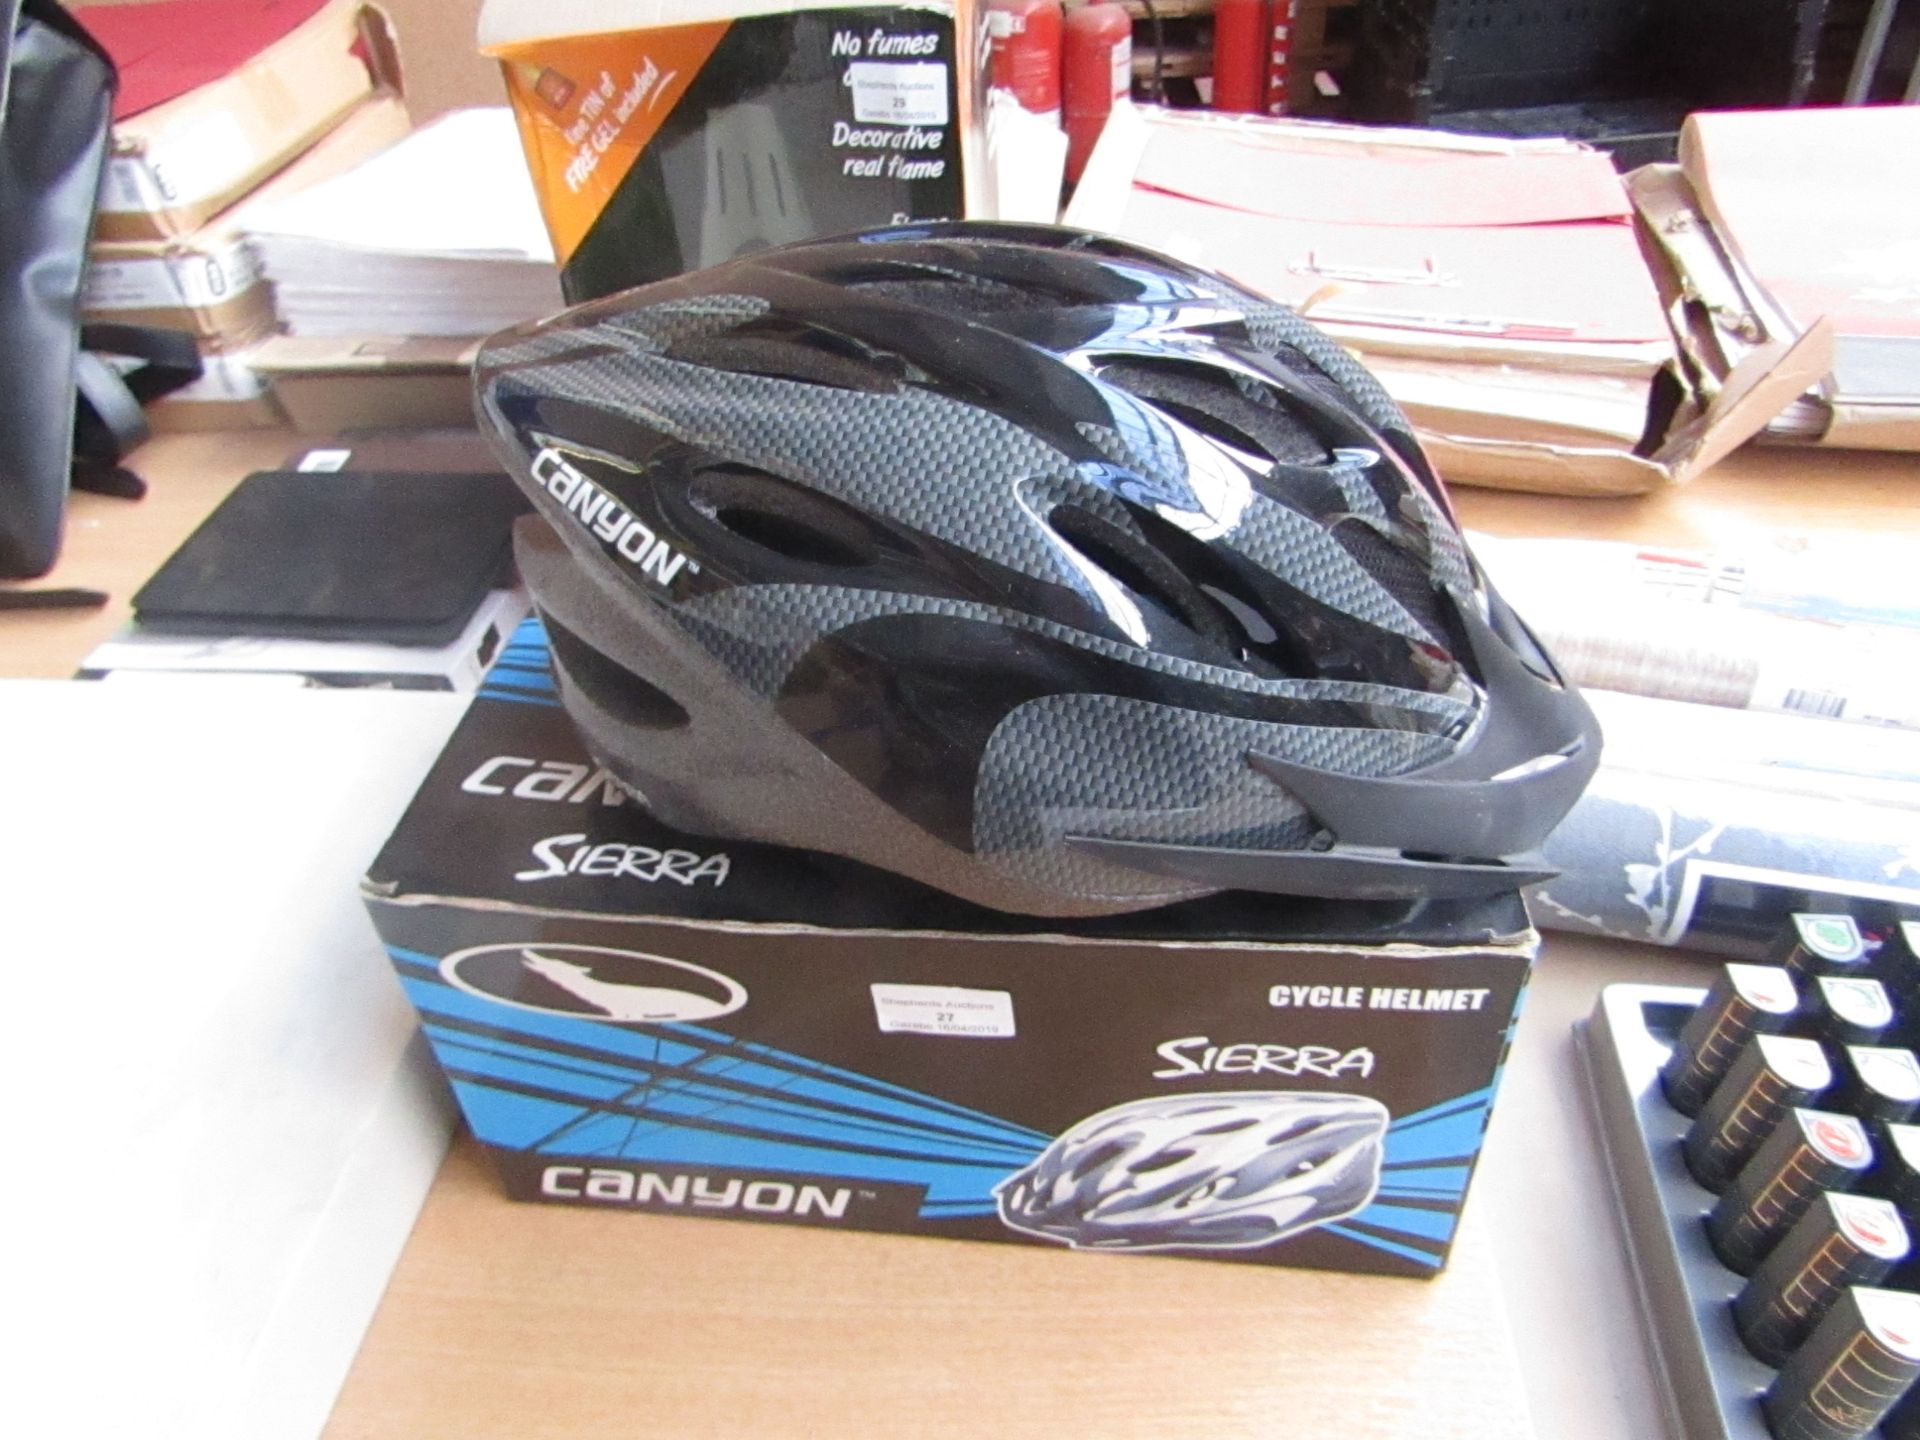 Canyon Sierra Cycle Helmet, unused in box